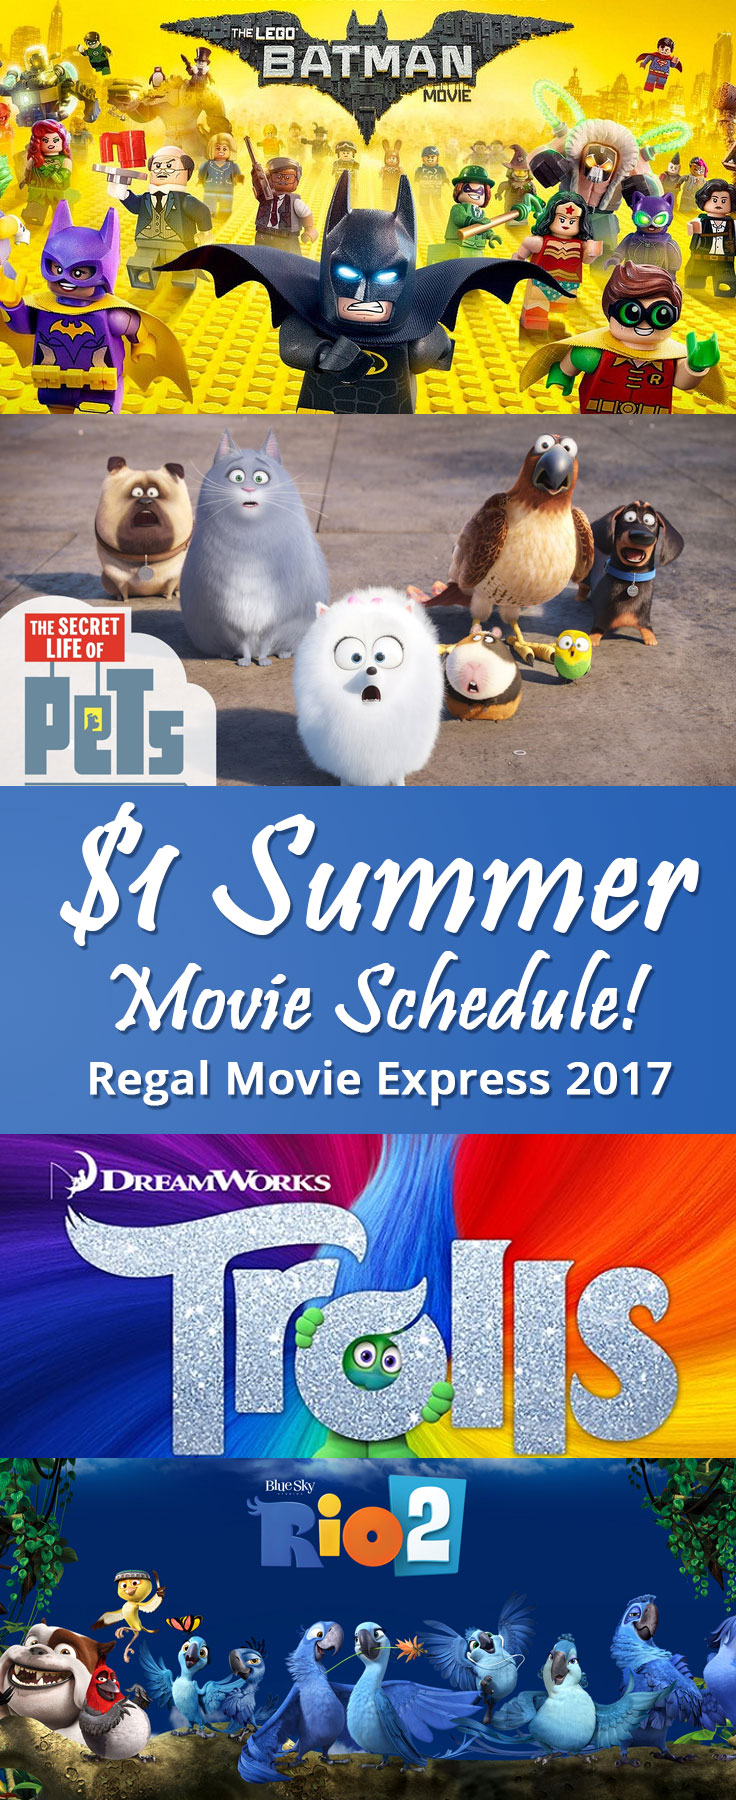 Dollar summer movie schedule